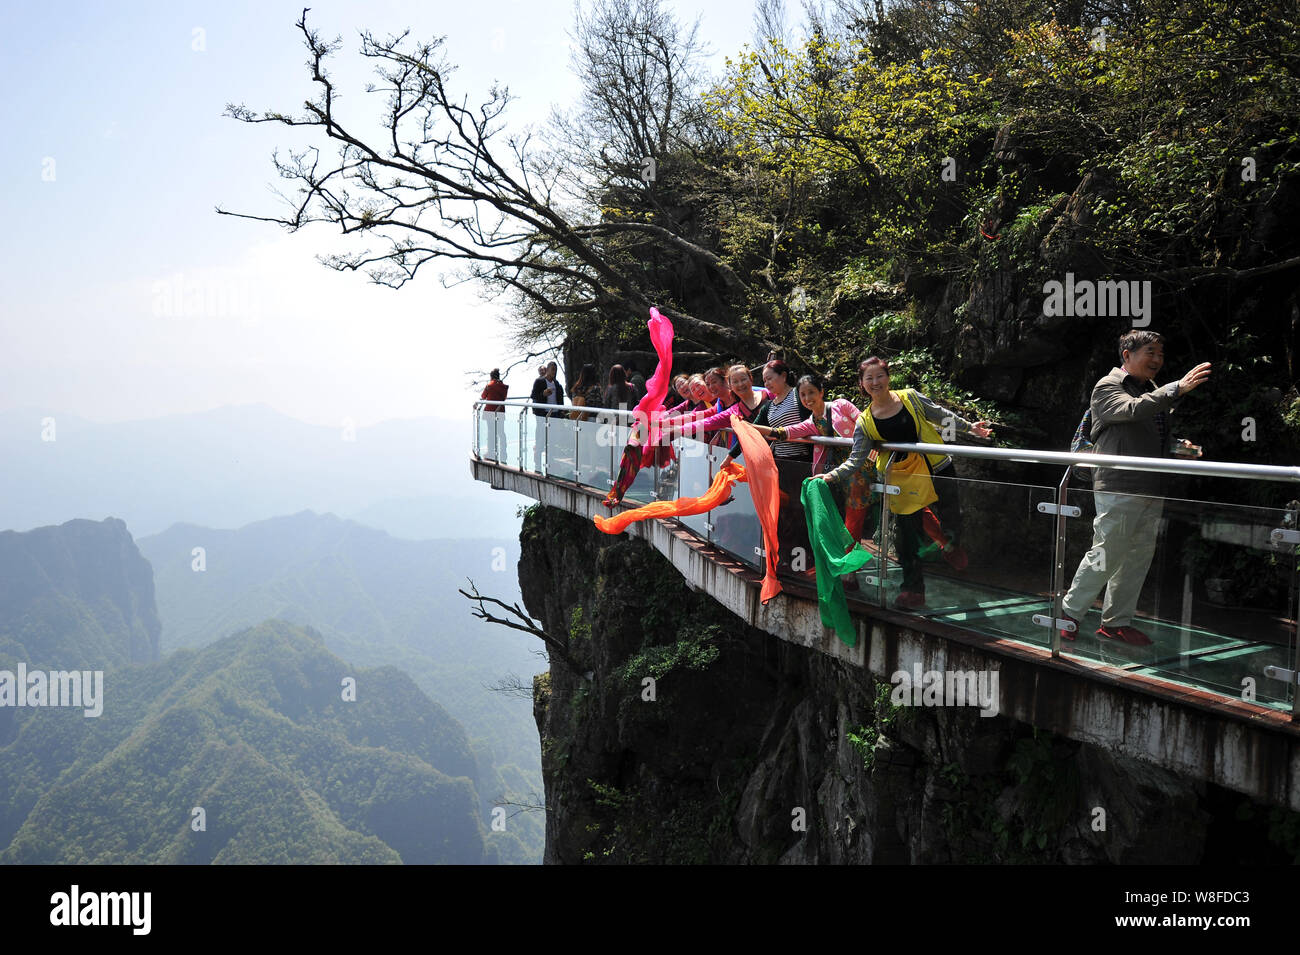 Tourists Walk On The Glass Skywalk On The Cliff Of Tianmen Mountain Or Tianmenshan Mountain In Zhangjiajie National Forest Park In Zhangjiajie City Stock Photo Alamy